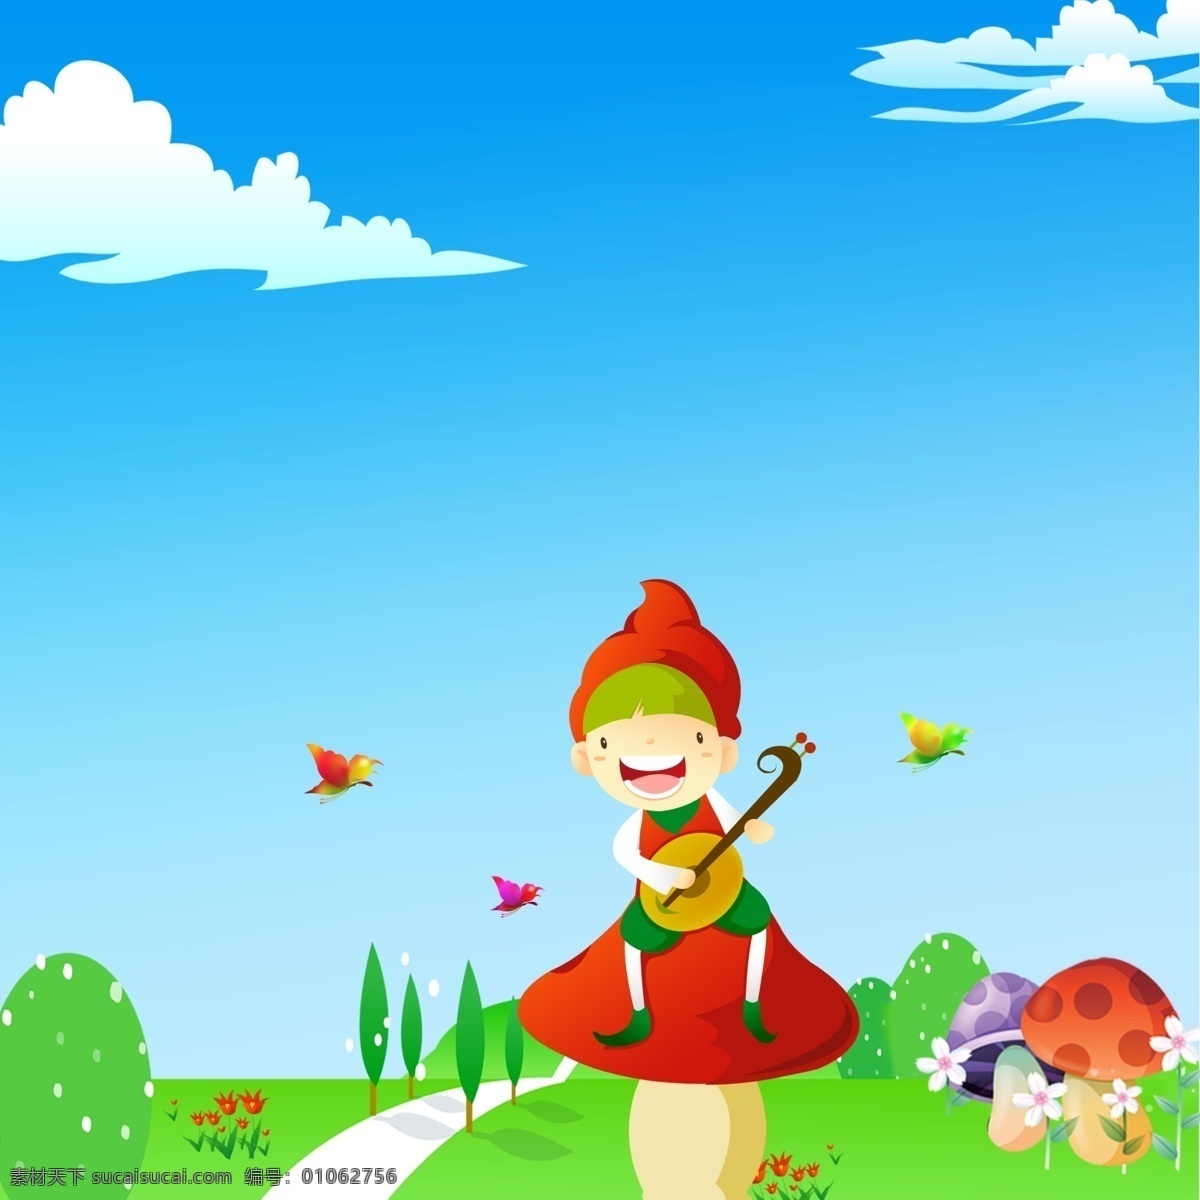 小红帽 伙伴 玩伴 蝴蝶 魔符 树木 卡通 蓝天白云 动漫动画 动漫人物